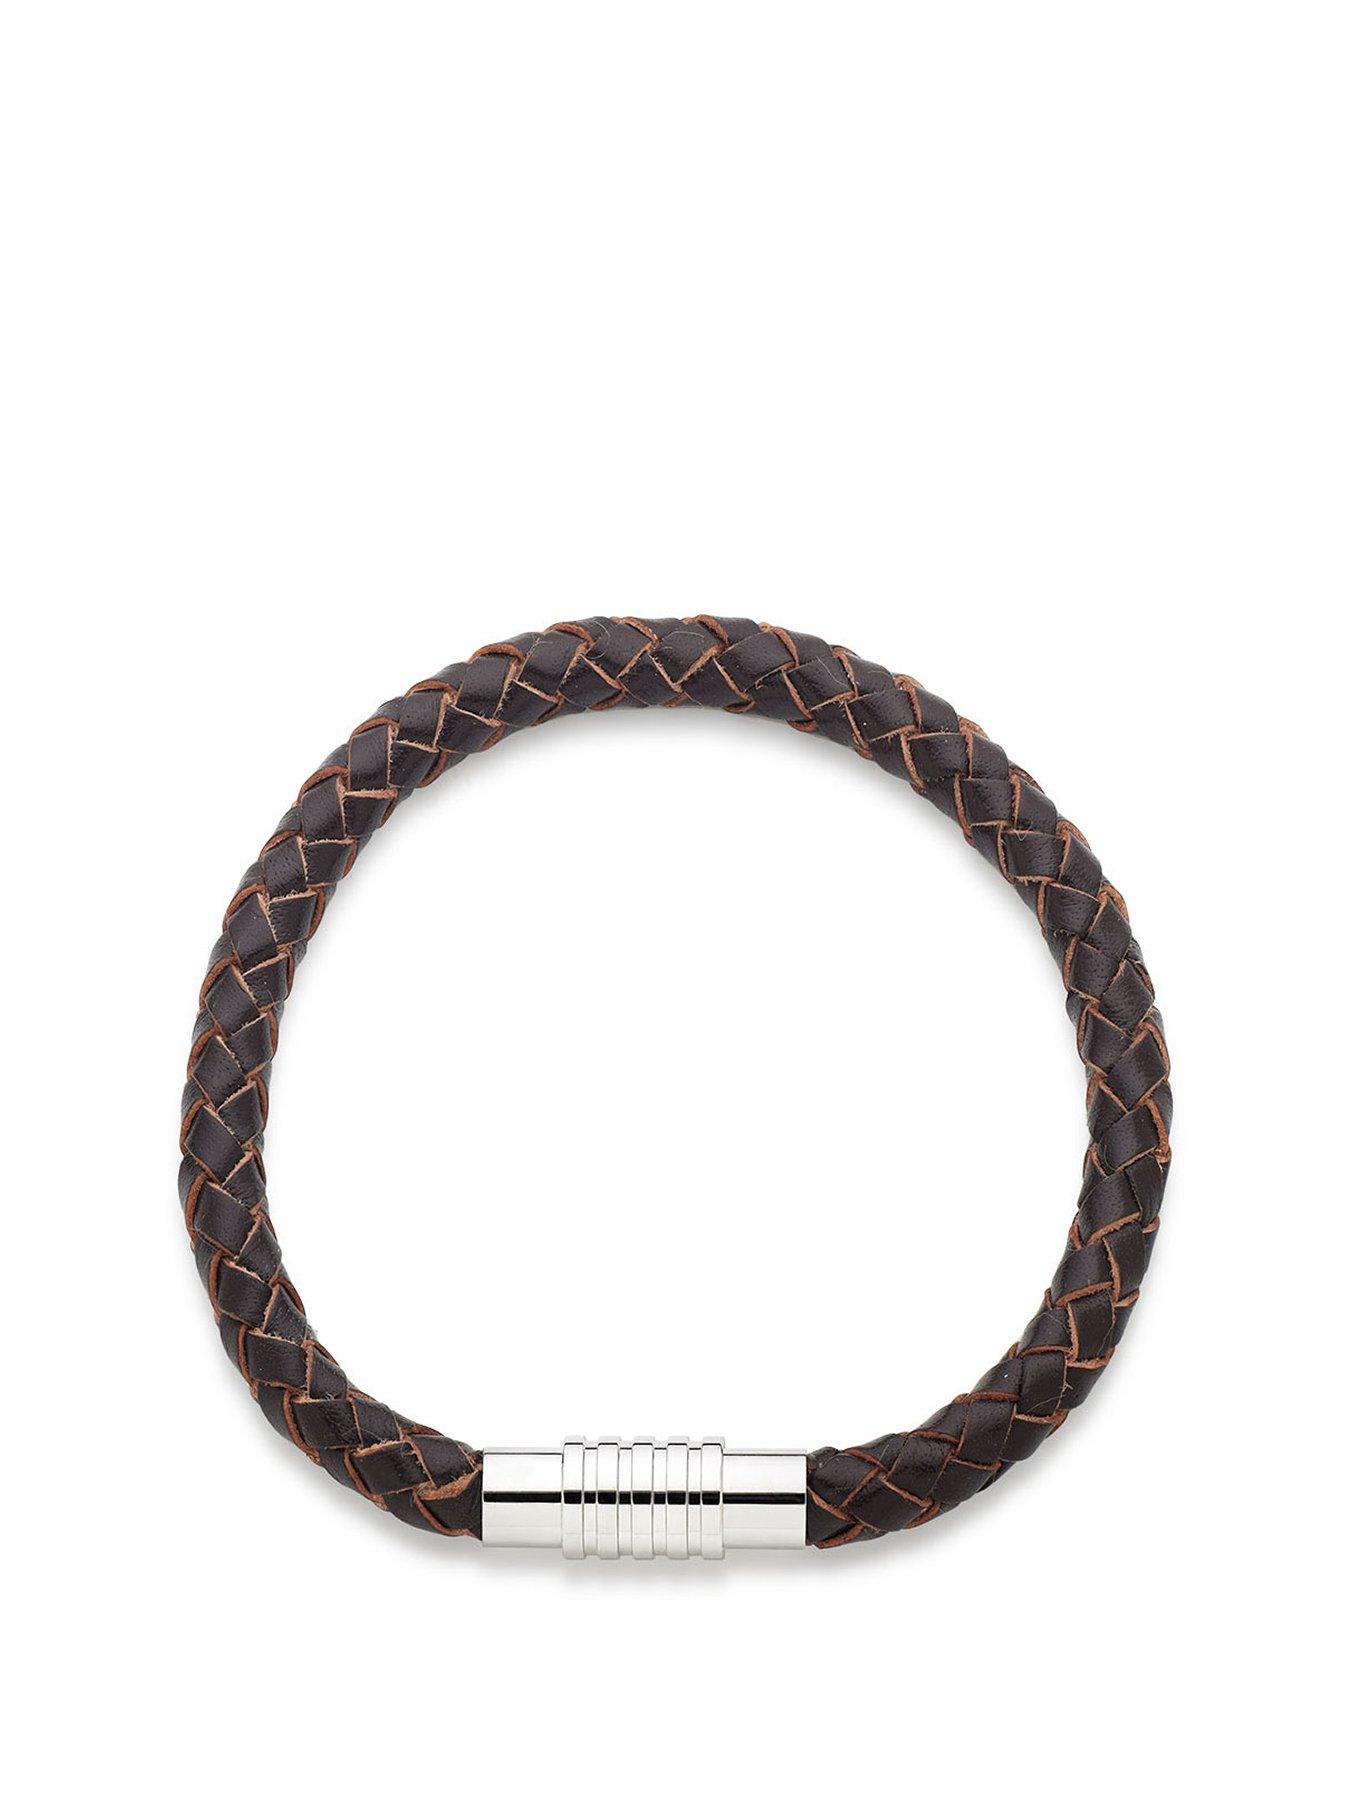  Leather Men's Bracelet - Brown